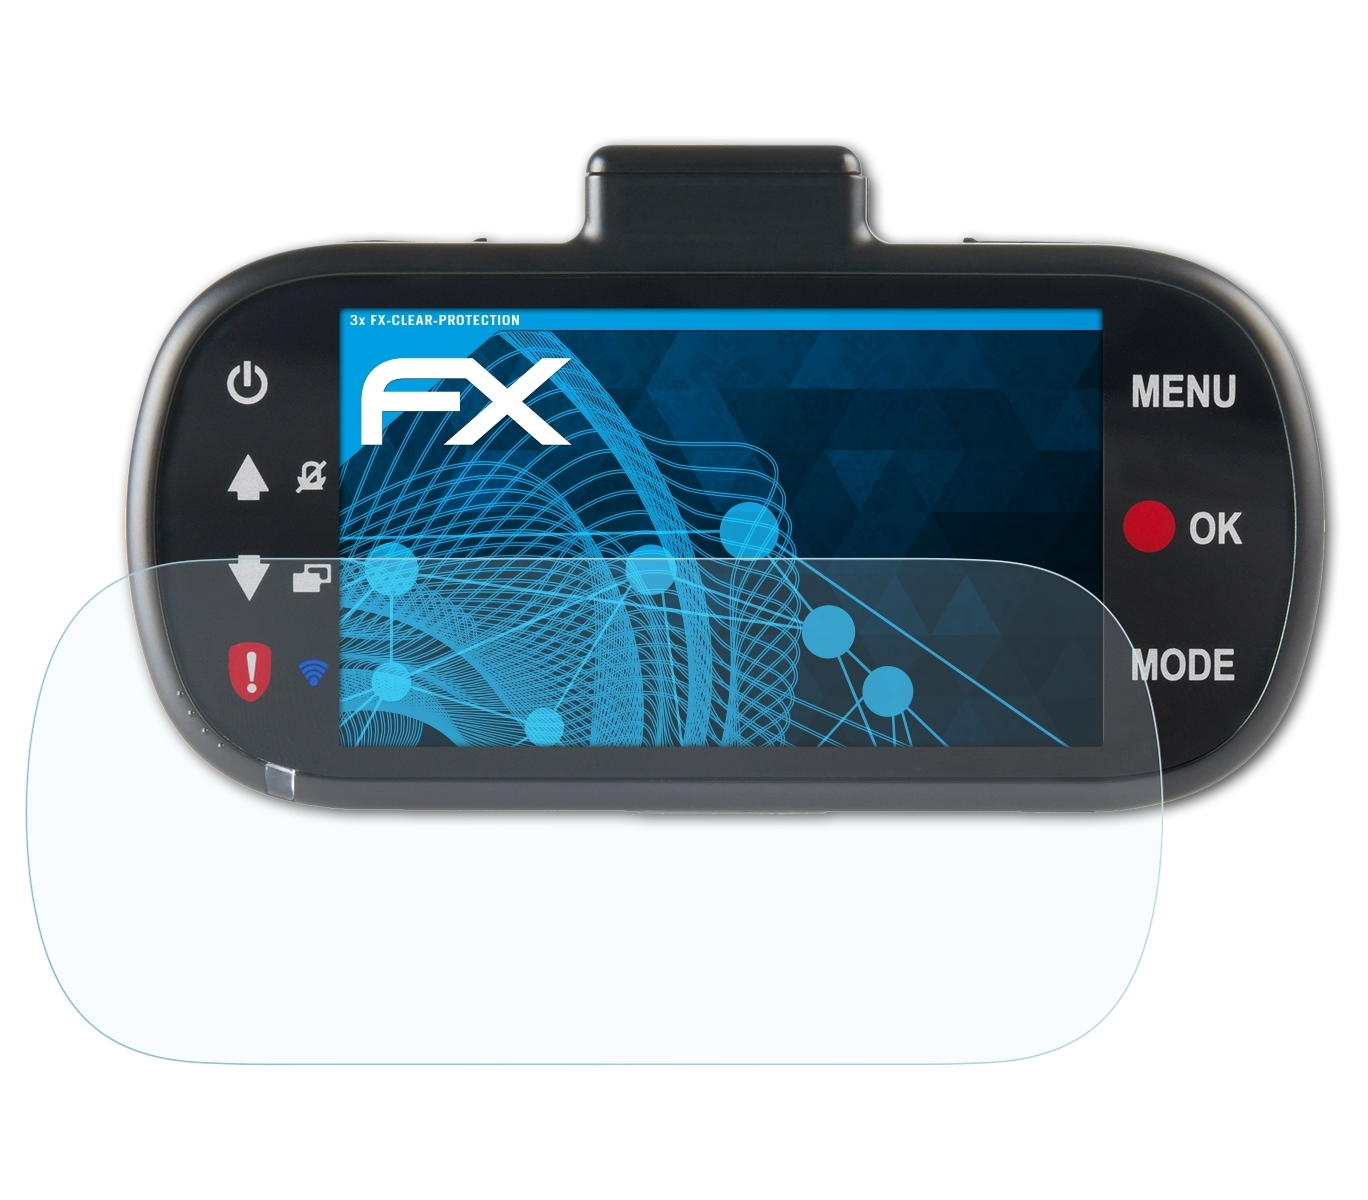 ATFOLIX 3x FX-Clear 512GW) Displayschutz(für Nextbase